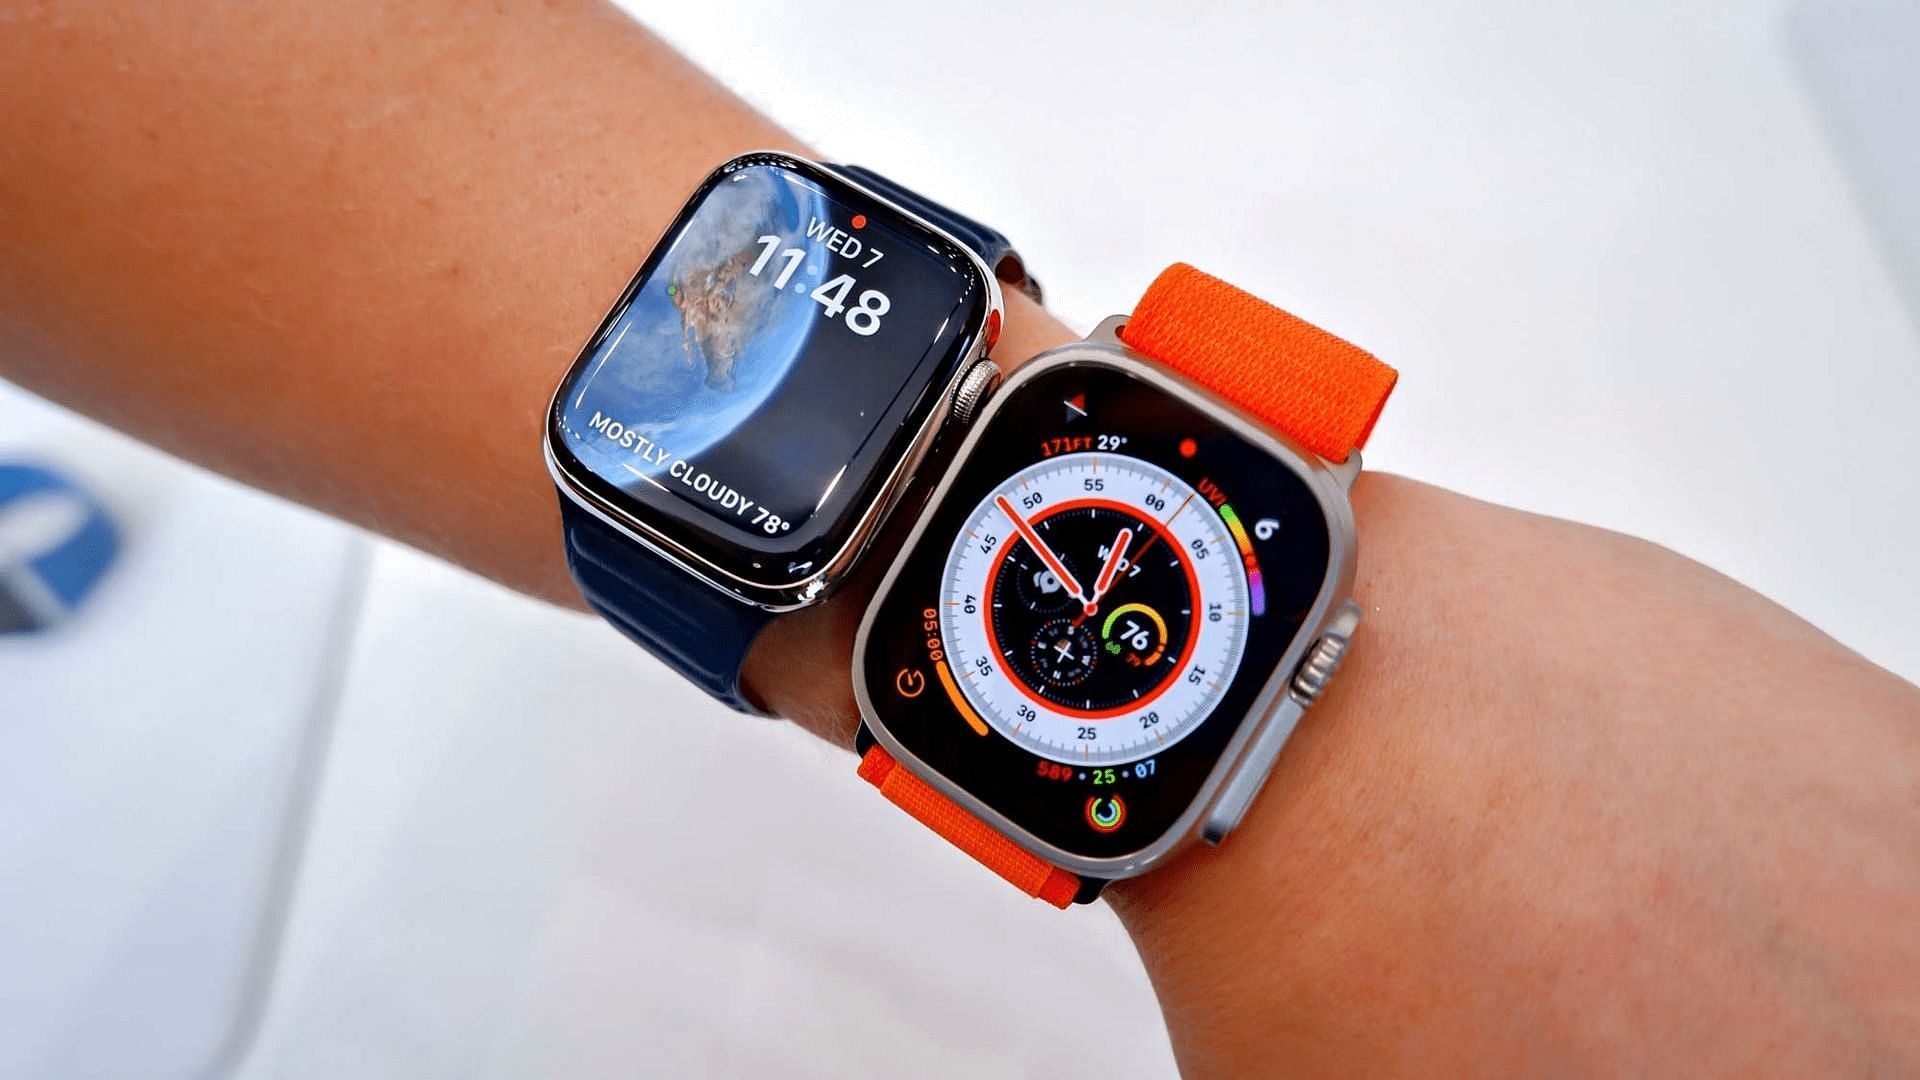 Apple Watch Series 8 với thiết kế đẹp và tính năng thông minh tiên tiến hơn bao giờ hết. Còn Apple Watch Ultra, một phiên bản đặc biệt của Apple, cũng là một lựa chọn tuyệt vời. Nếu bạn đang muốn tìm một chiếc đồng hồ thông minh cao cấp, hãy xem hình ảnh liên quan đến Apple Watch Series 8 vs Apple Watch Ultra để chọn cho mình một chiếc đồng hồ hoàn hảo nhất!